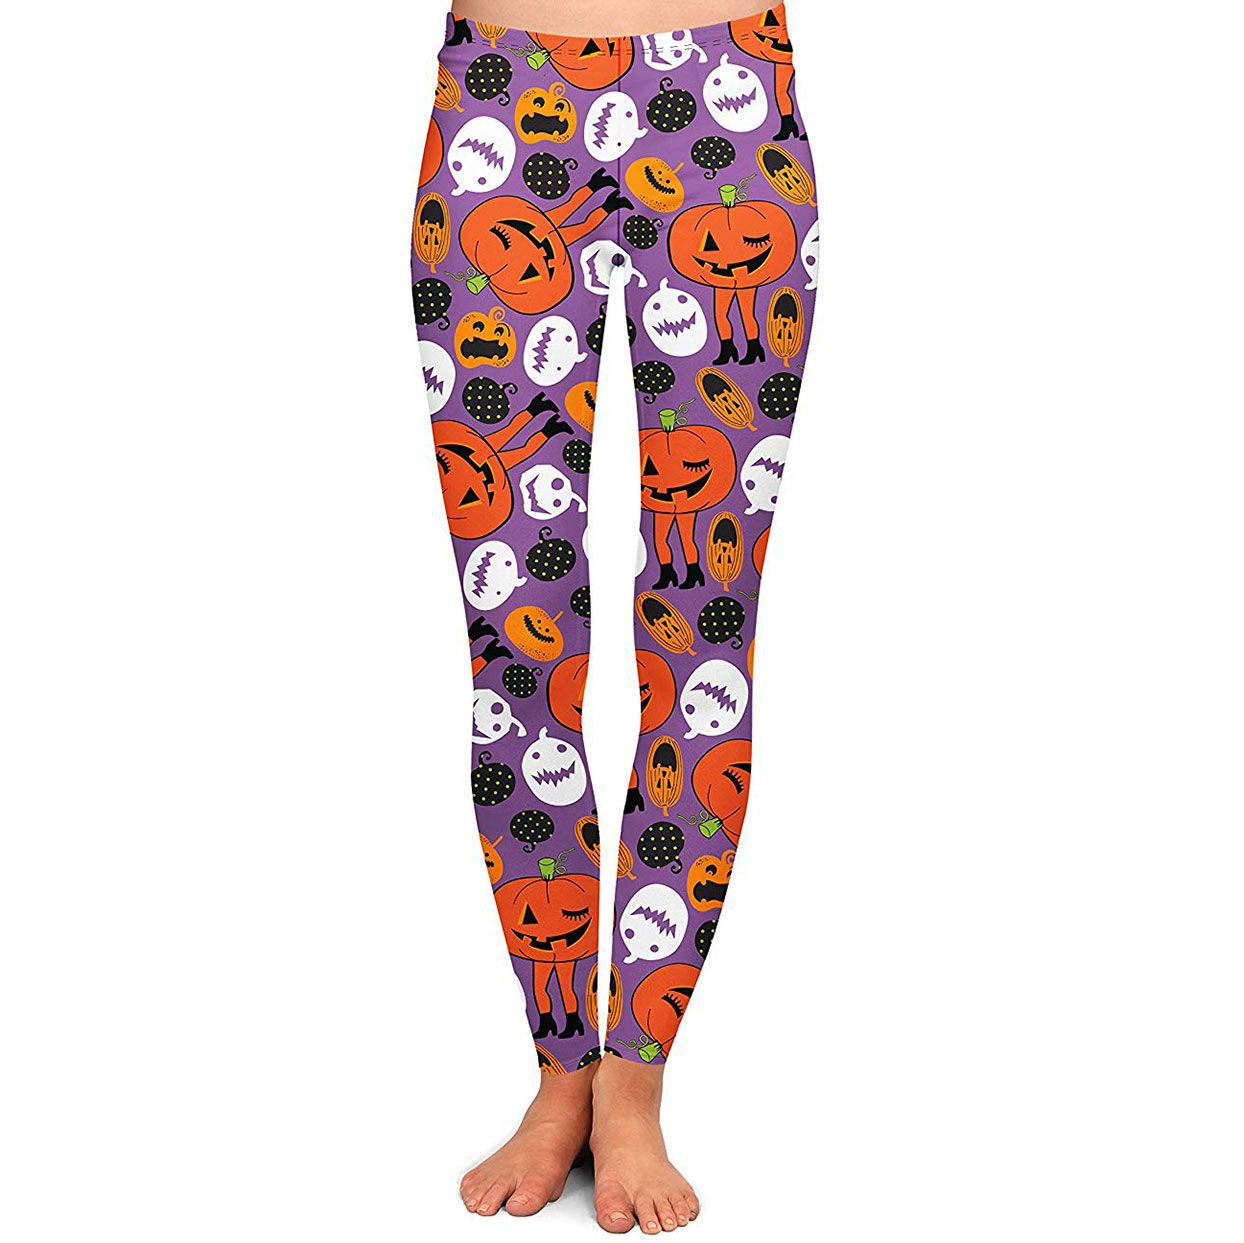 ZYPAGV Halloween Womens Printed Yoga Pants High Waist Dance Leggings 